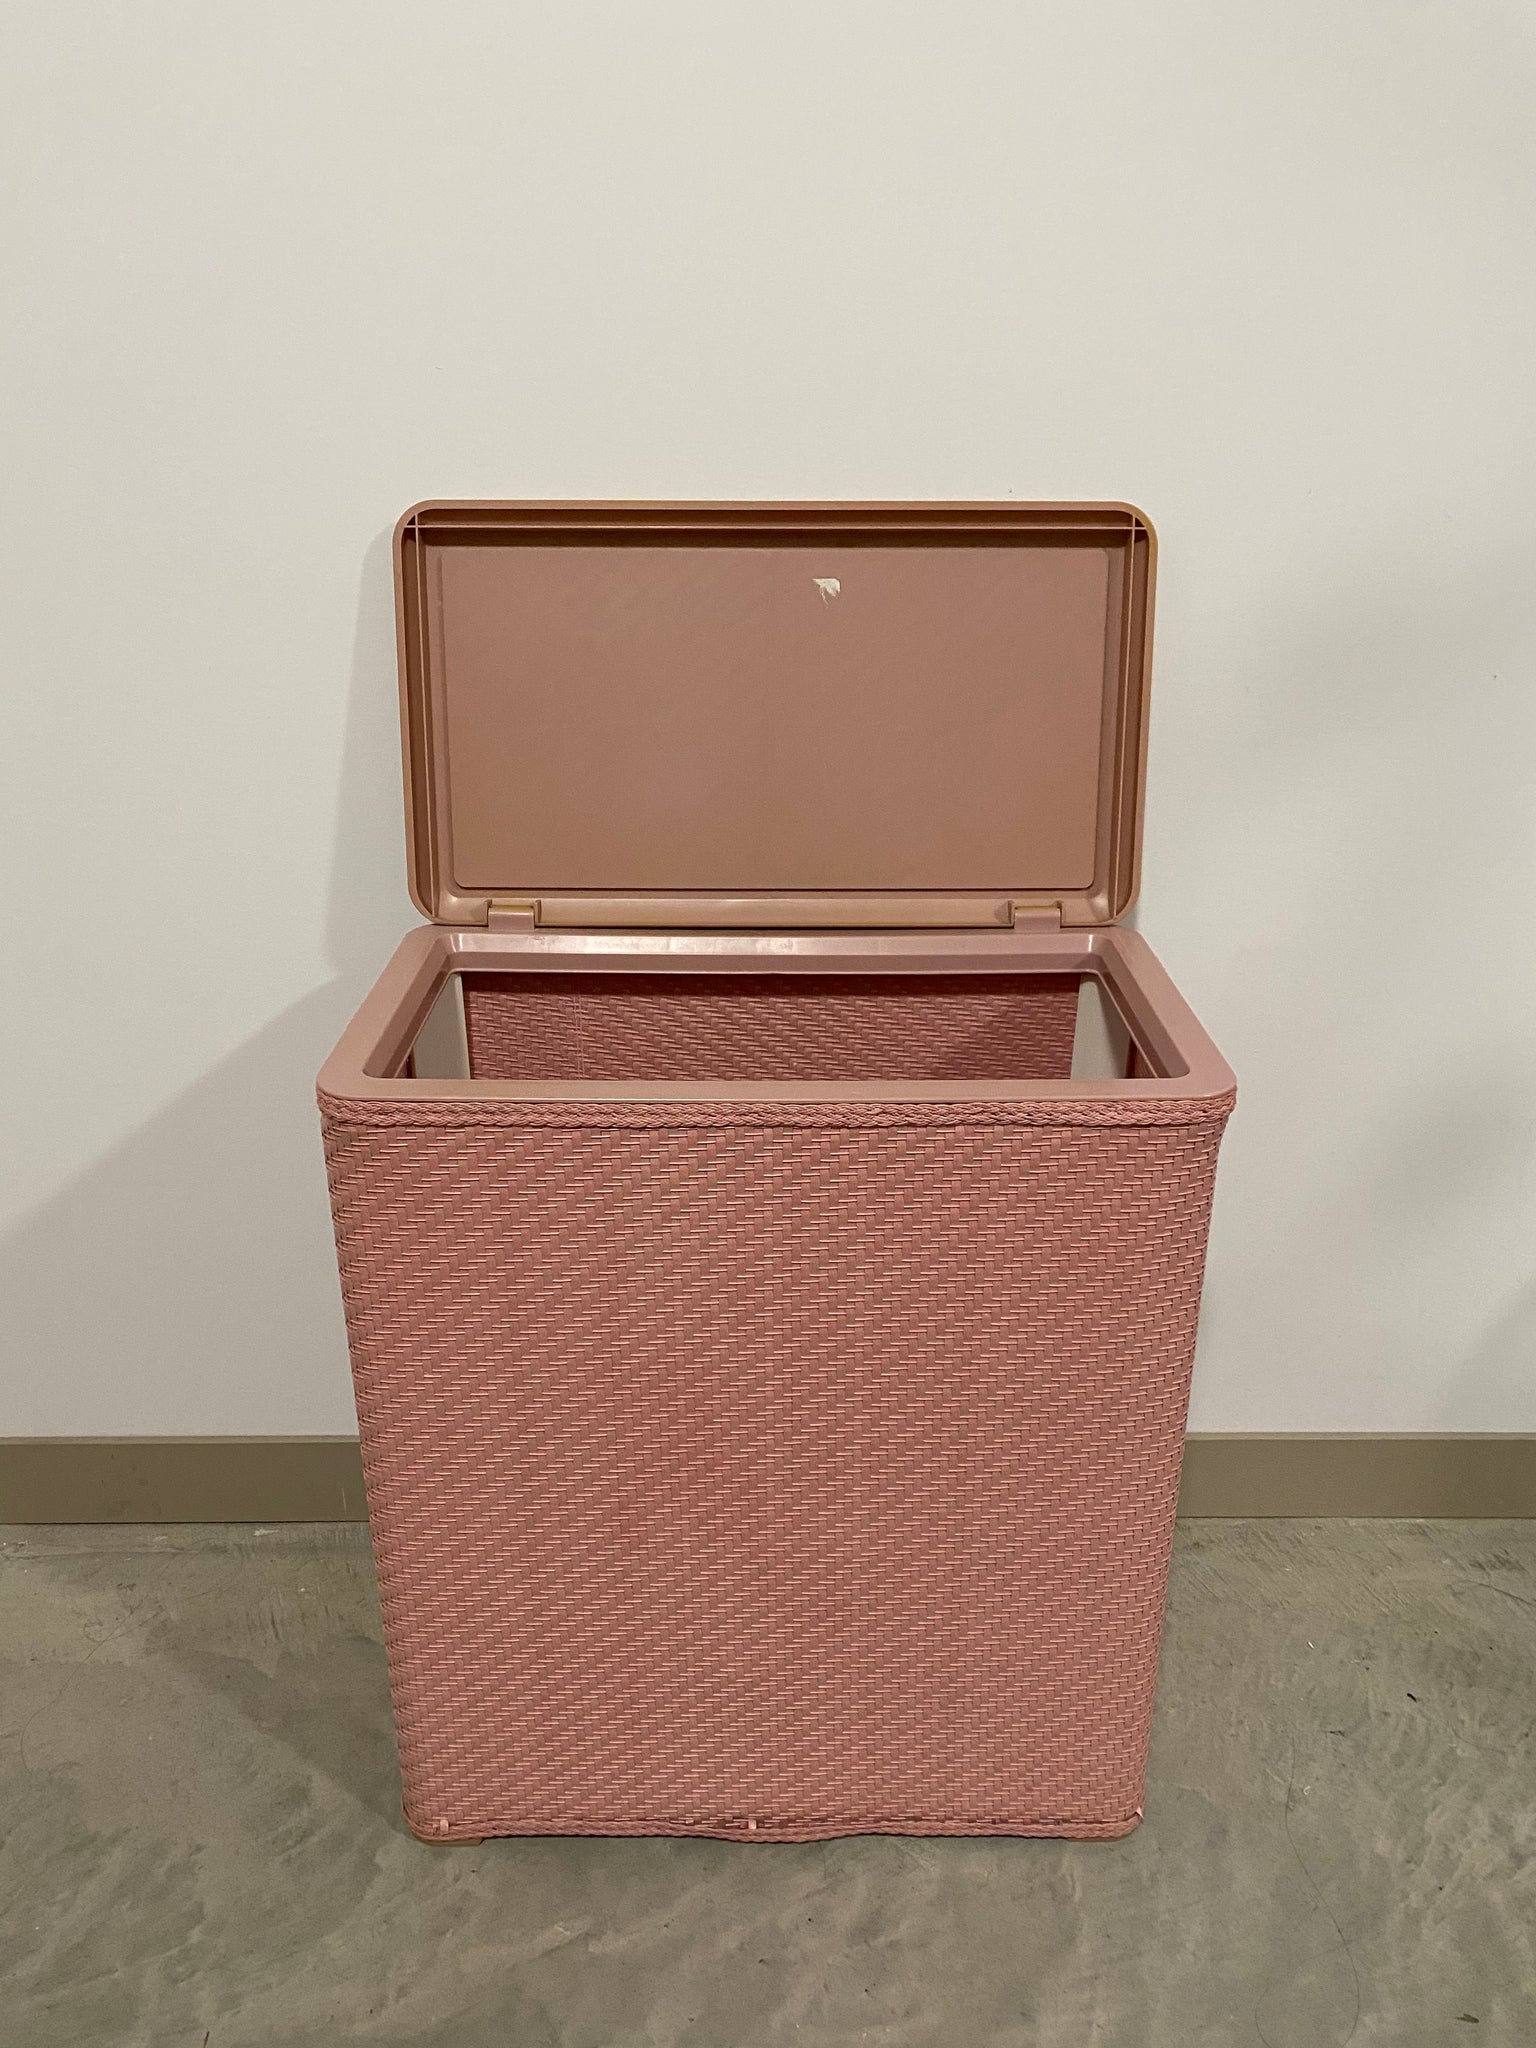 Vintage pink laundry hamper